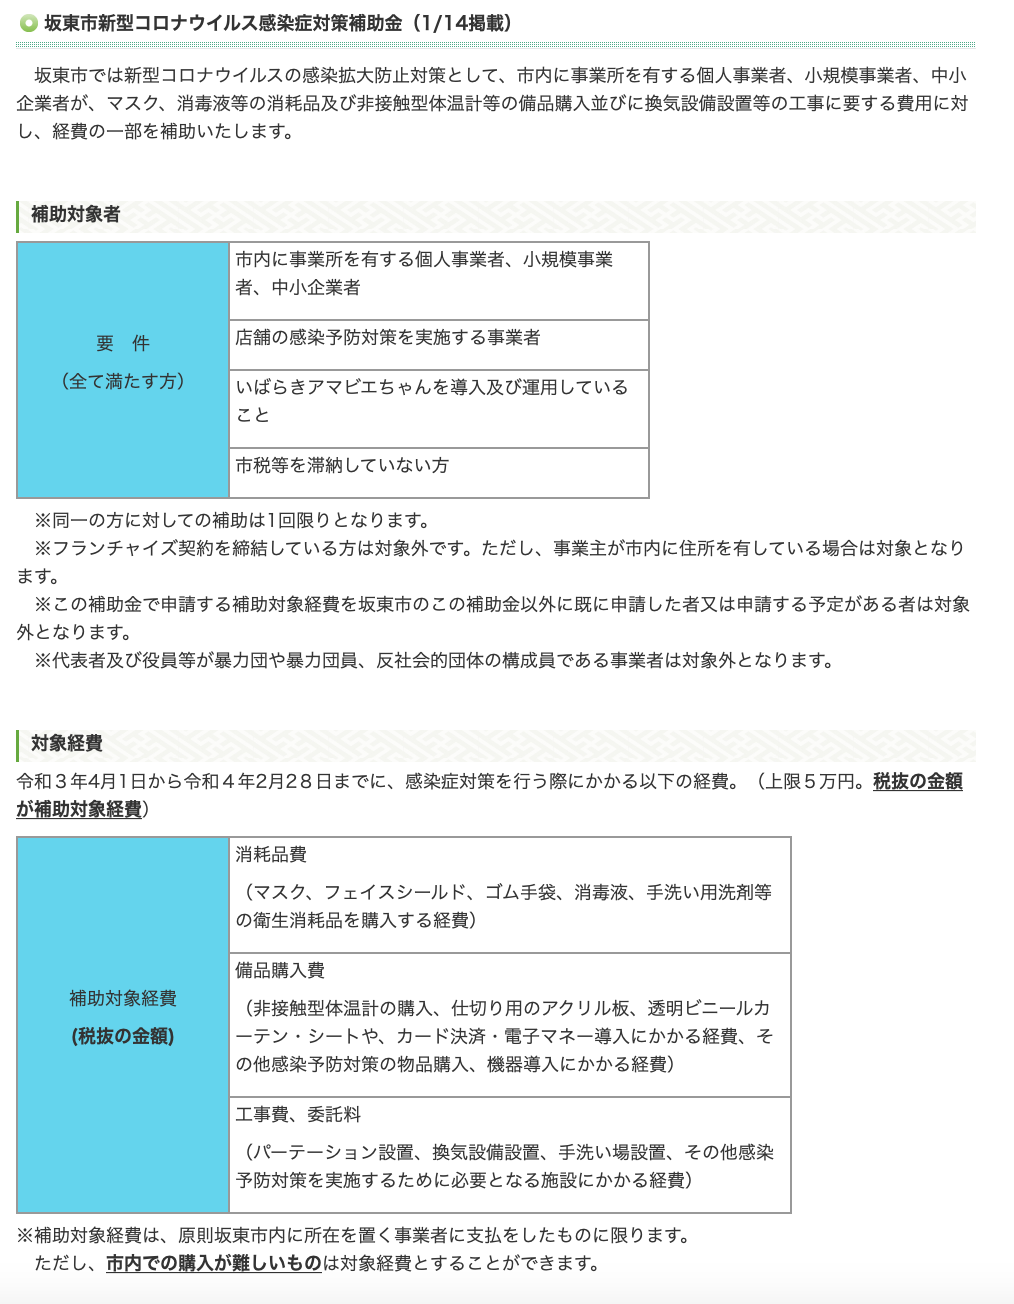 坂東市新型コロナウイルス感染症対策補助金001